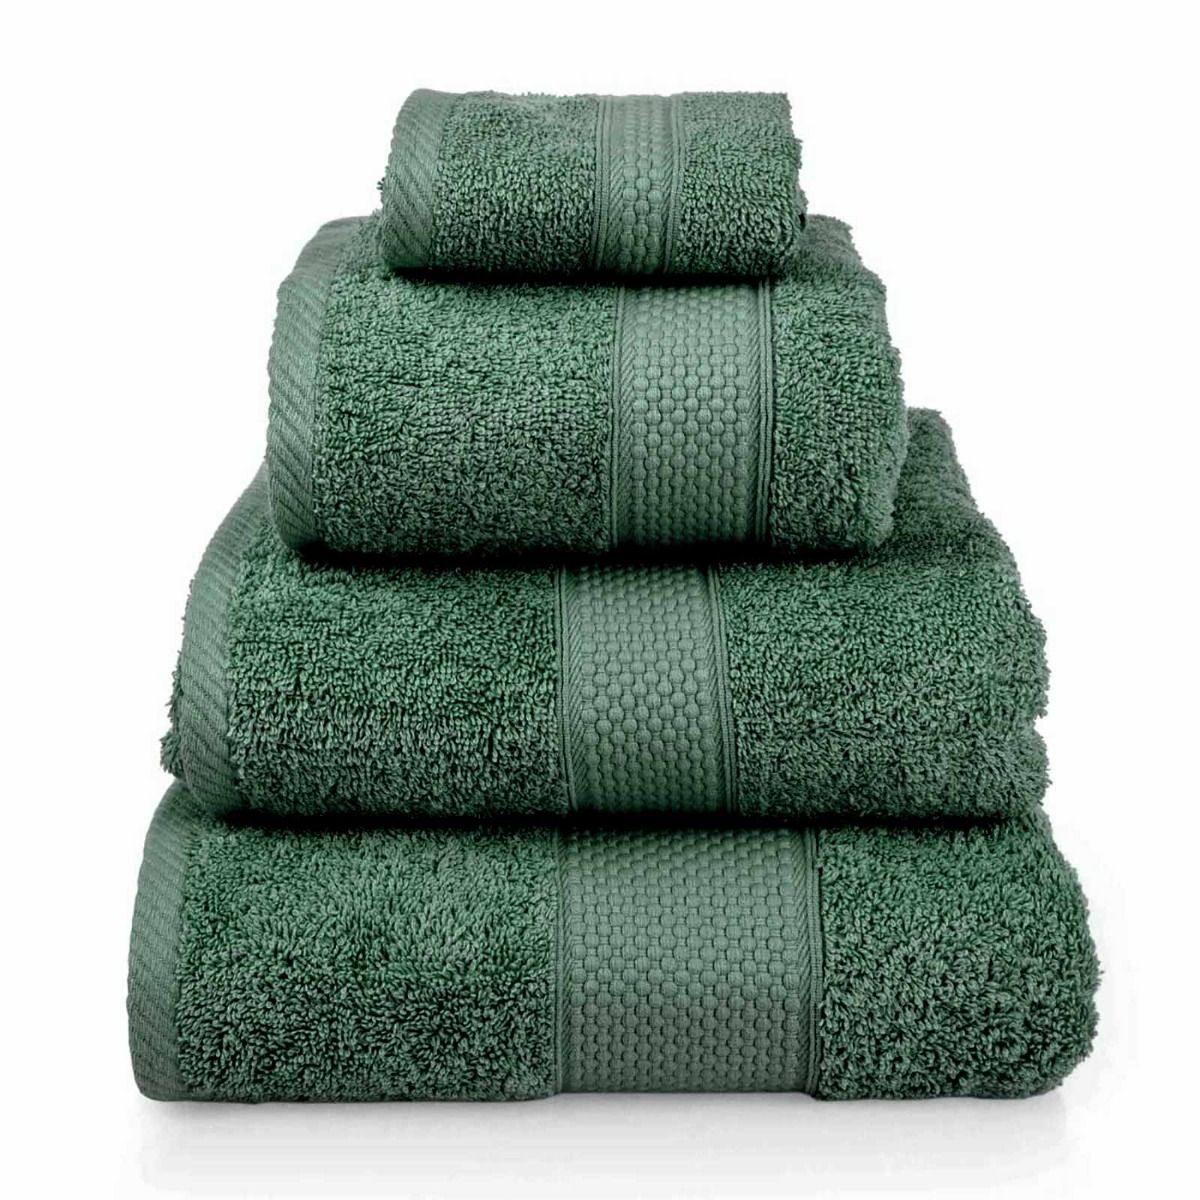 Turkish Cotton Towel, Dark Green